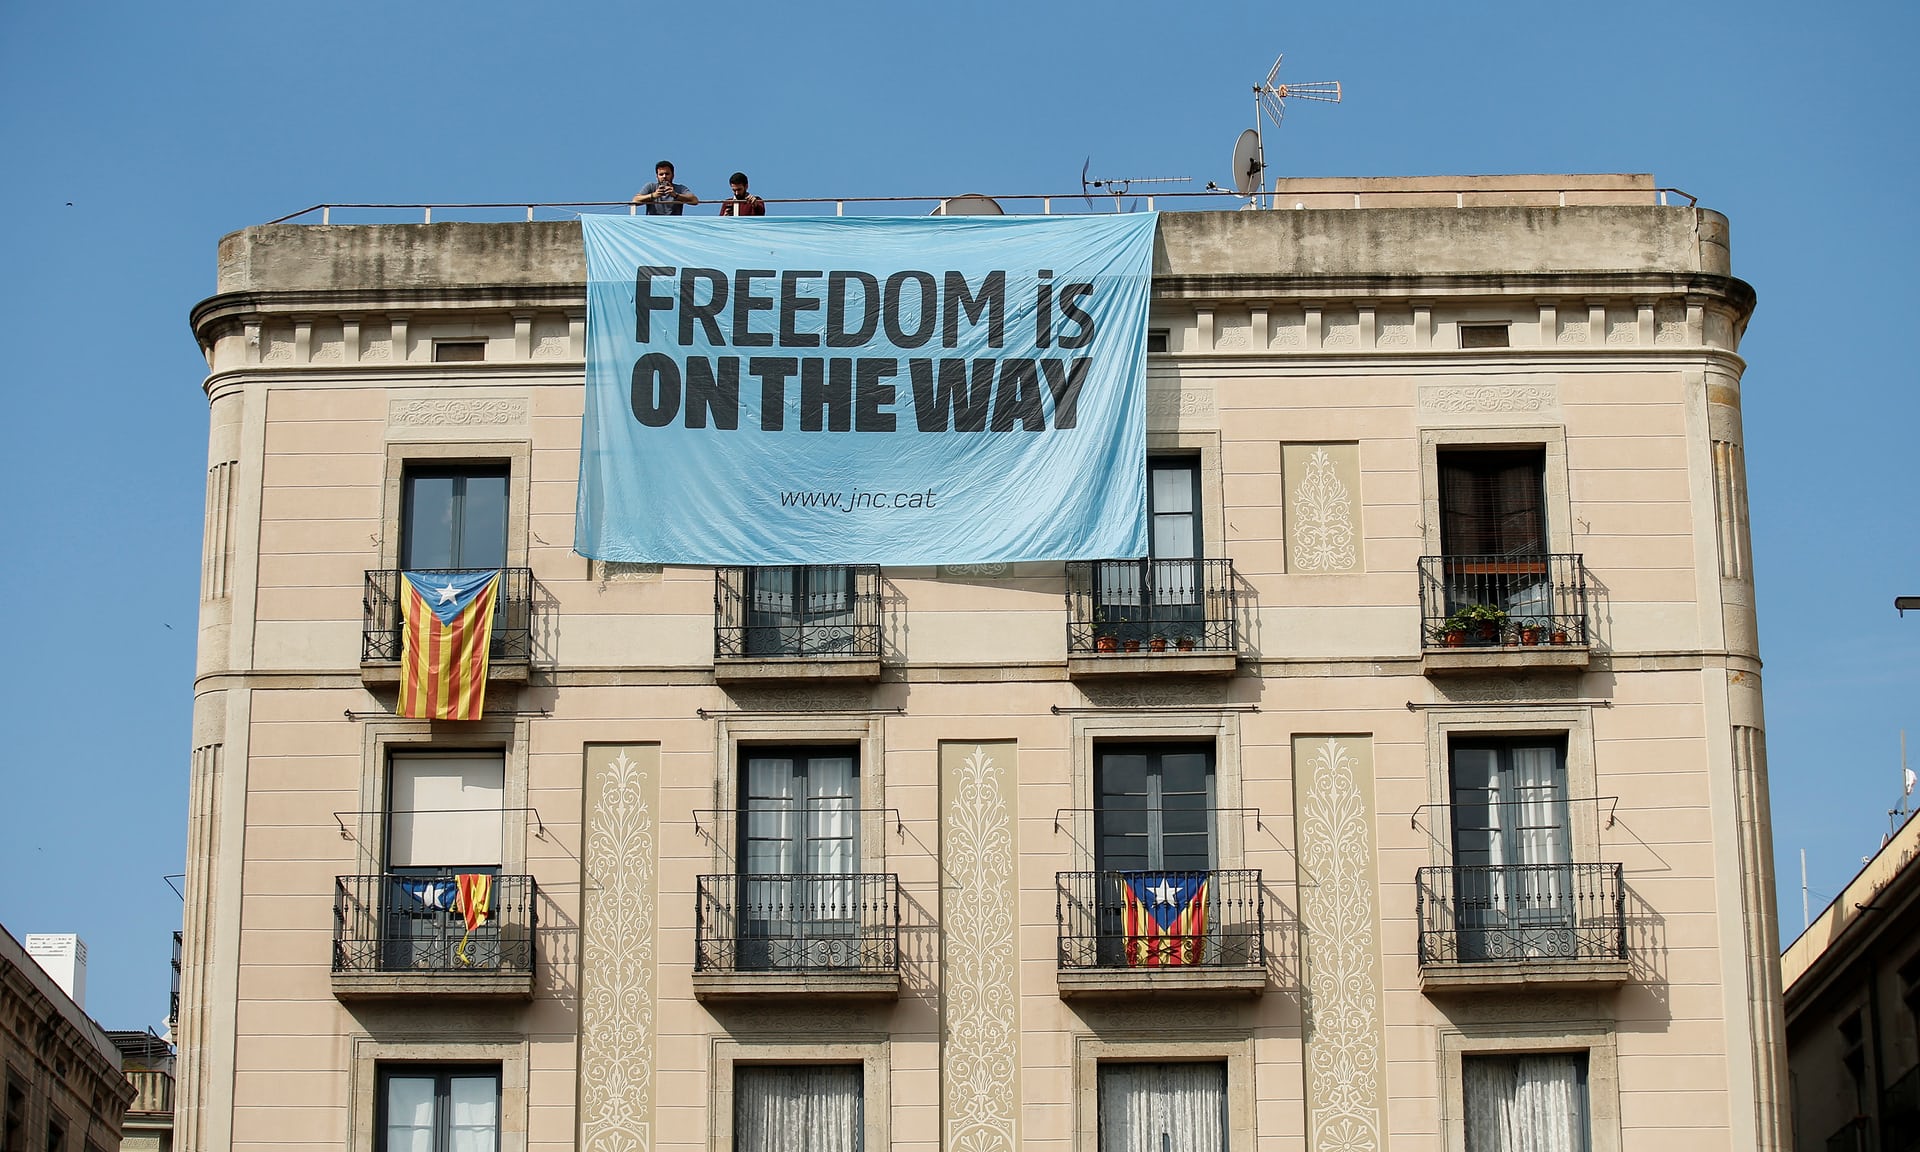 لافتة على احدى المبانى تدعو إلى الحرية والاستقلال من اسبانيا